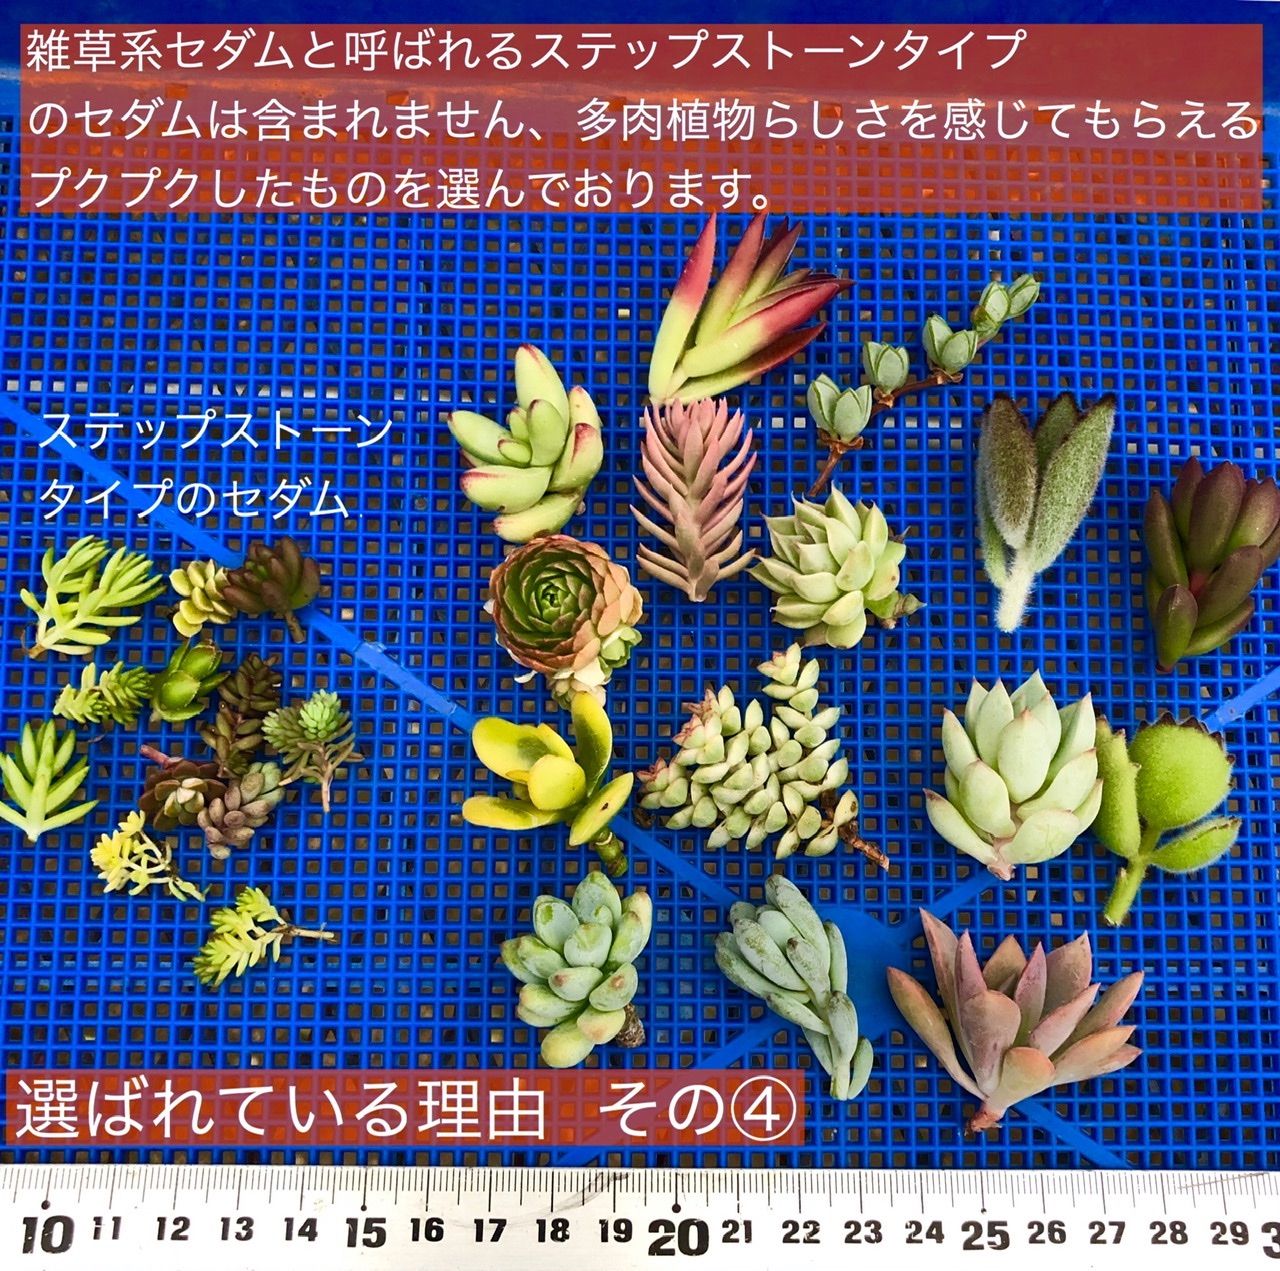 28多肉植物 カット苗 15品種 【超特価】 - エケベリア・セダム